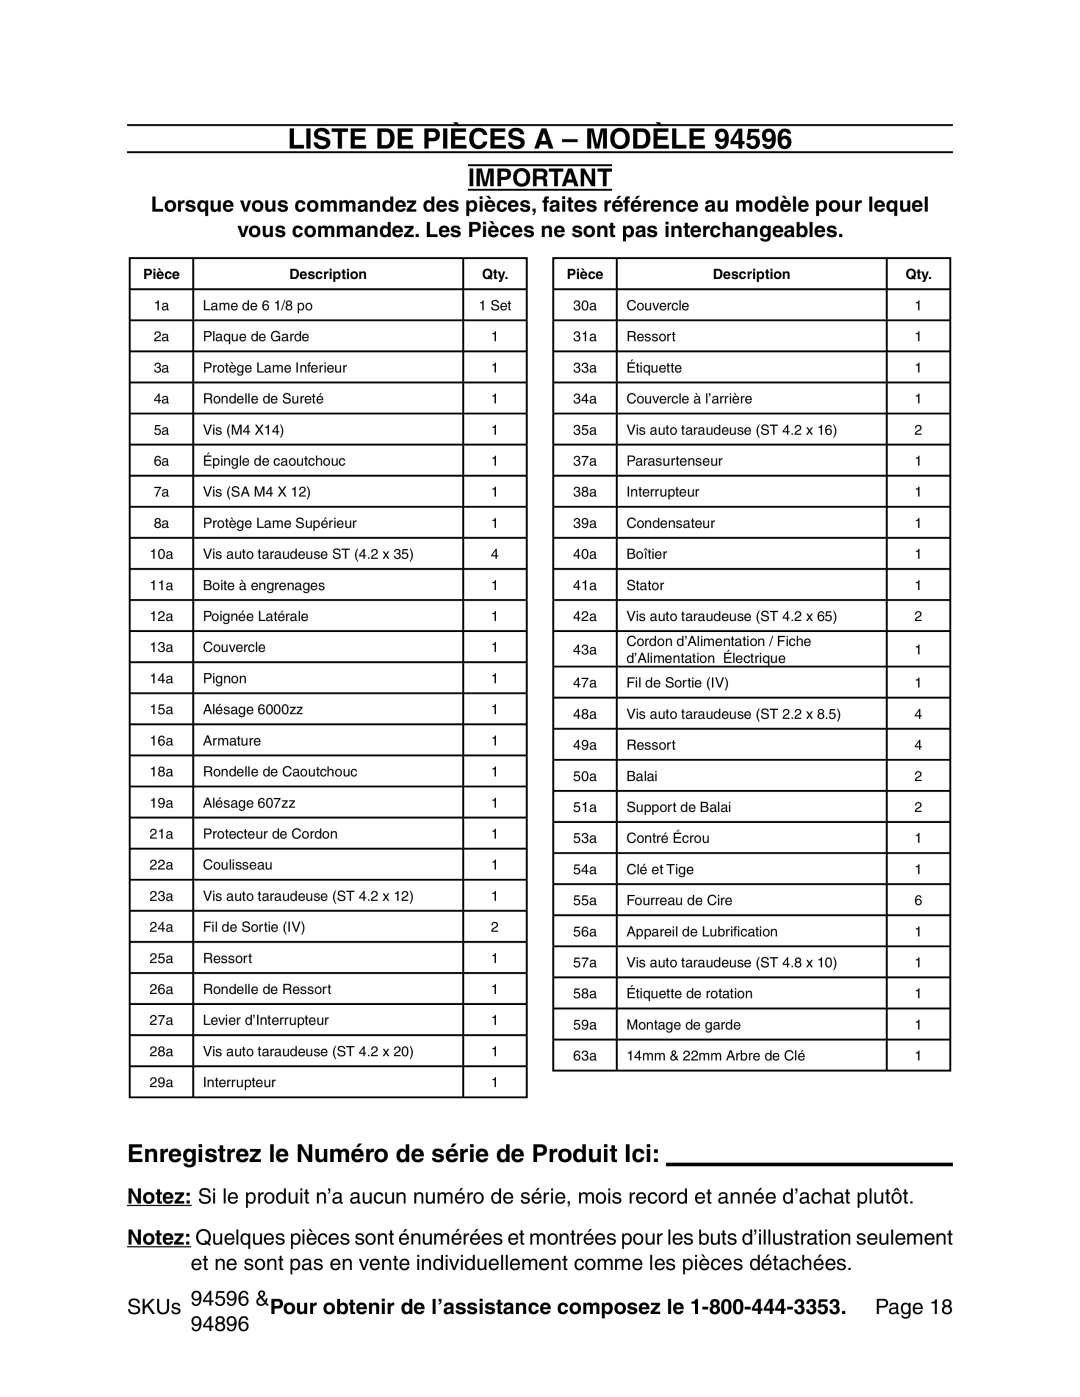 Chicago Electric 94596 manual Liste De Pièces A - Modèle, Enregistrez le Numéro de série de Produit Ici 